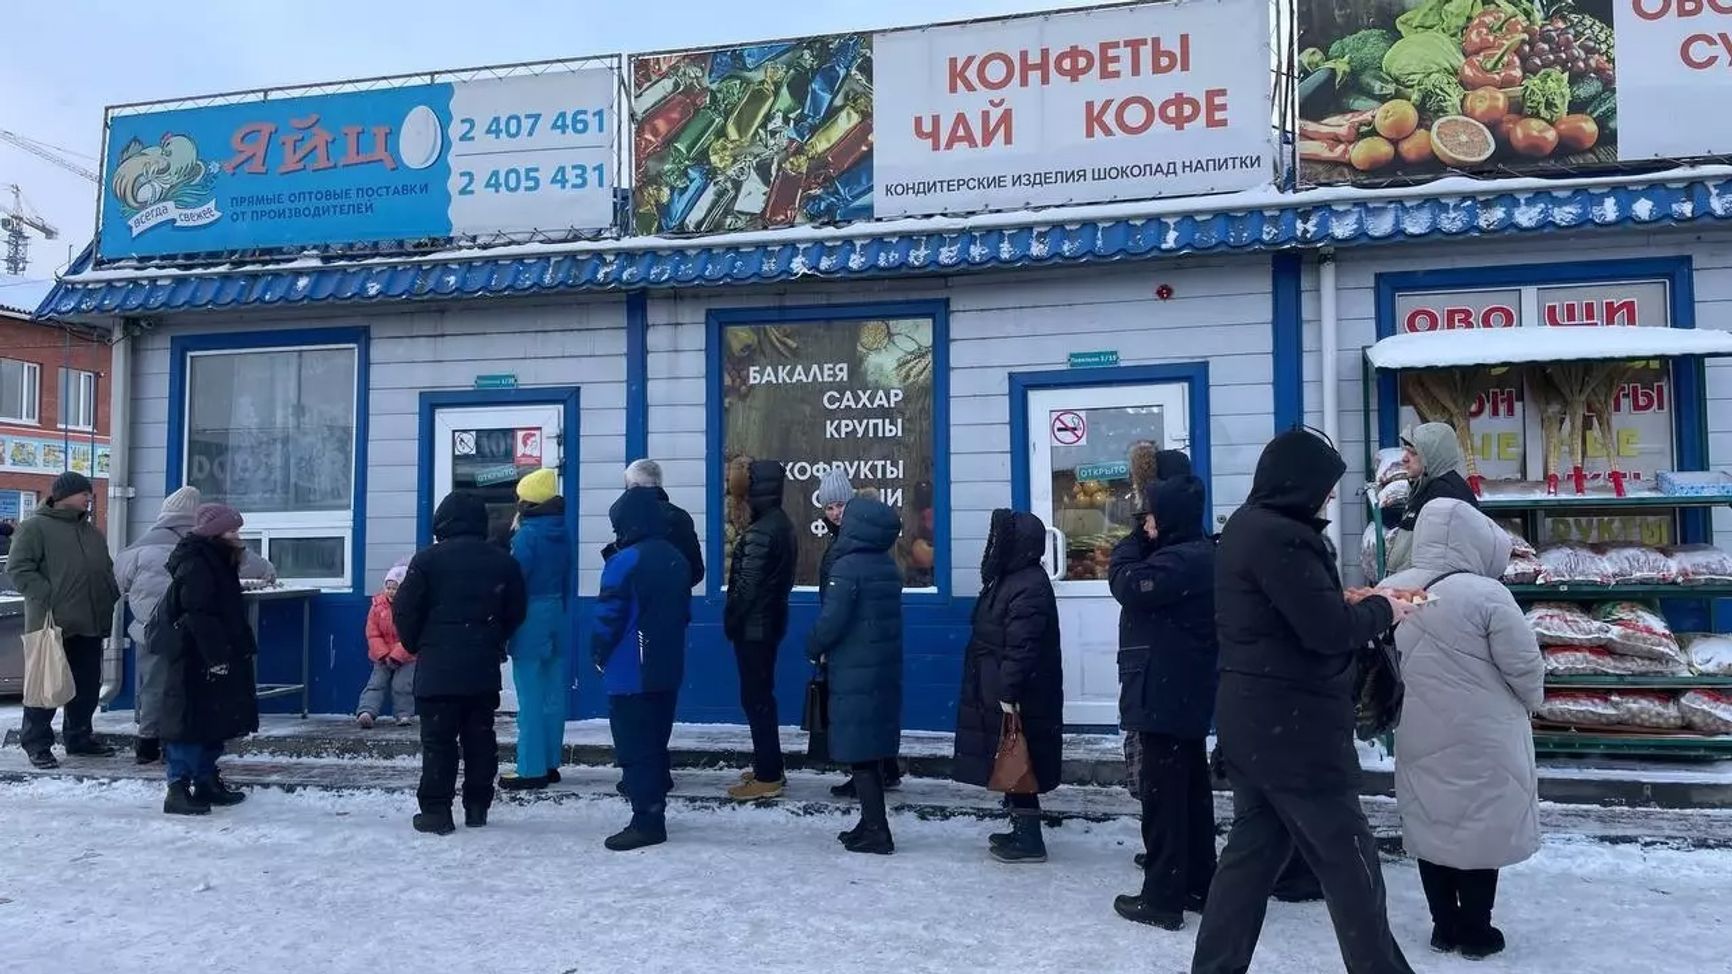 Очередь за "дешевыми" яйцами в Красноярске